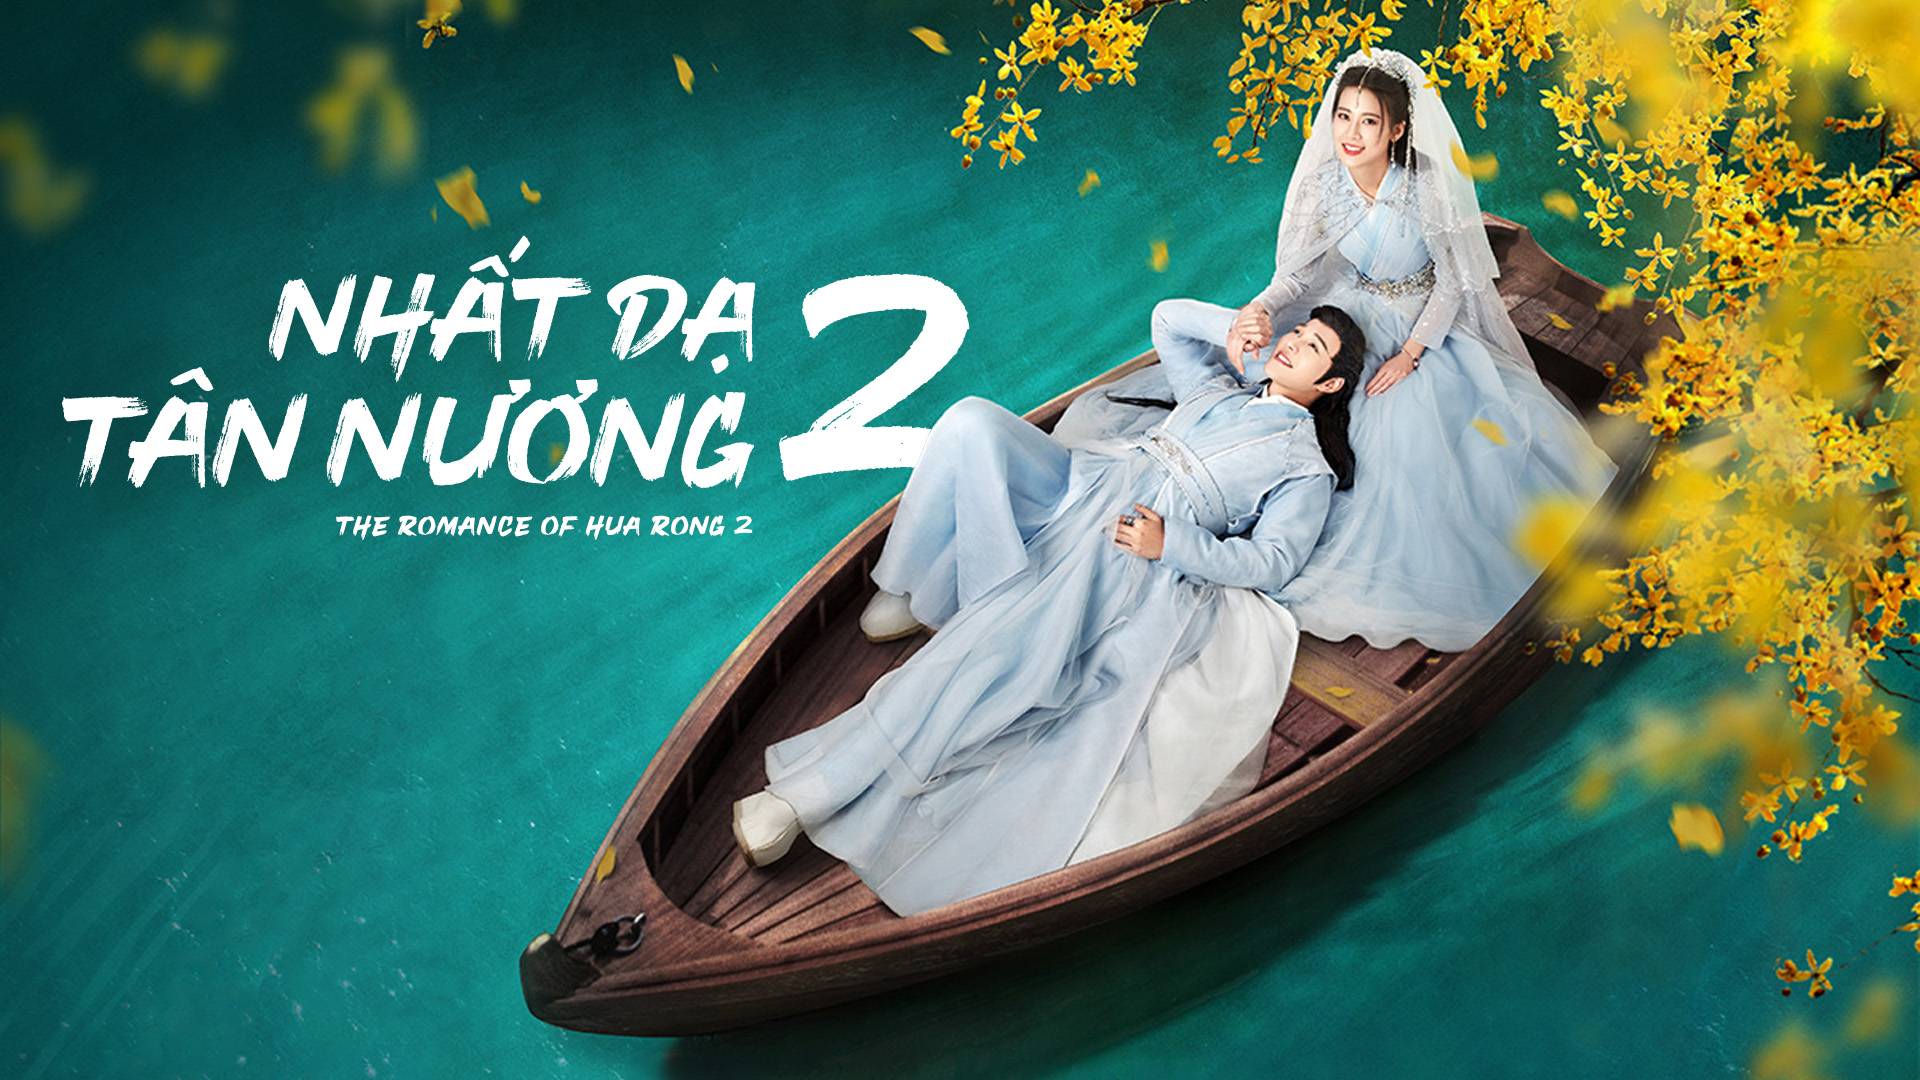 Nhất Dạ Tân Nương 2, The Romance Of Hua Rong 2 2022